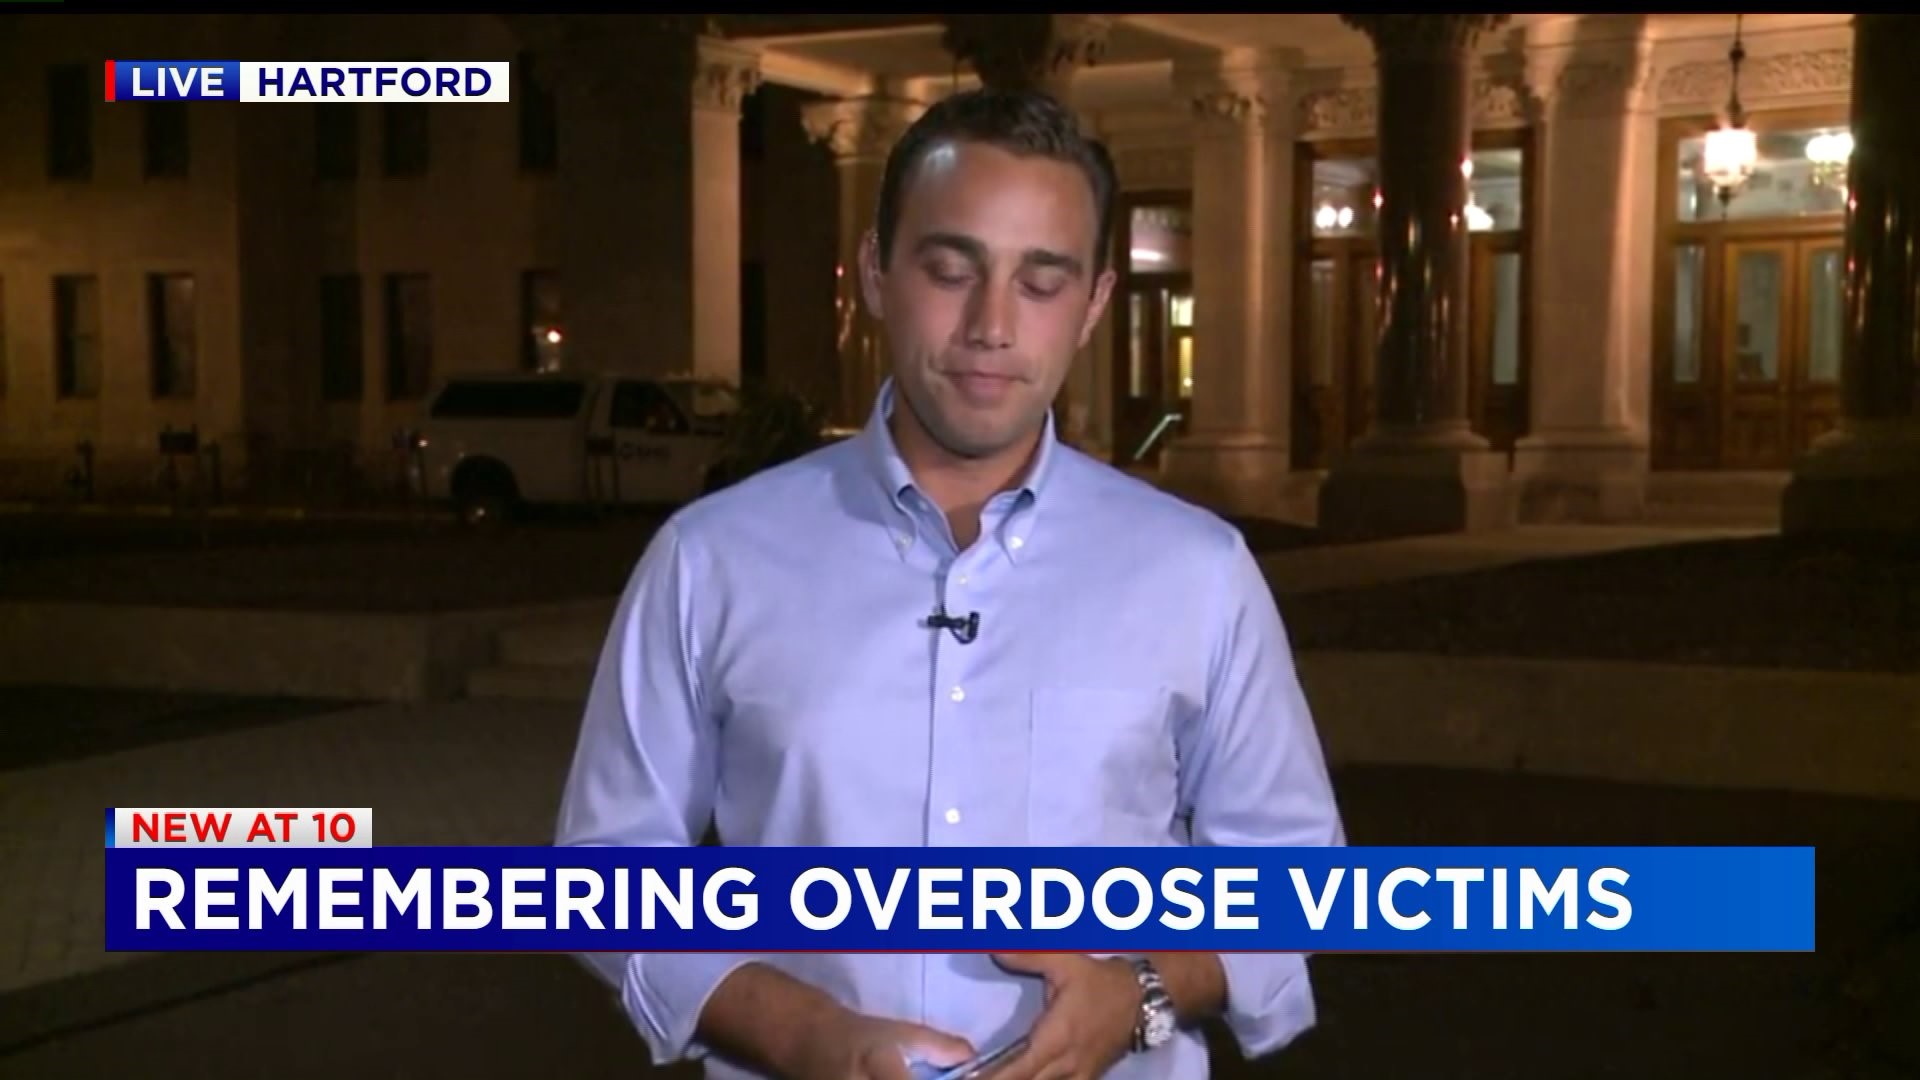 Overdose victims